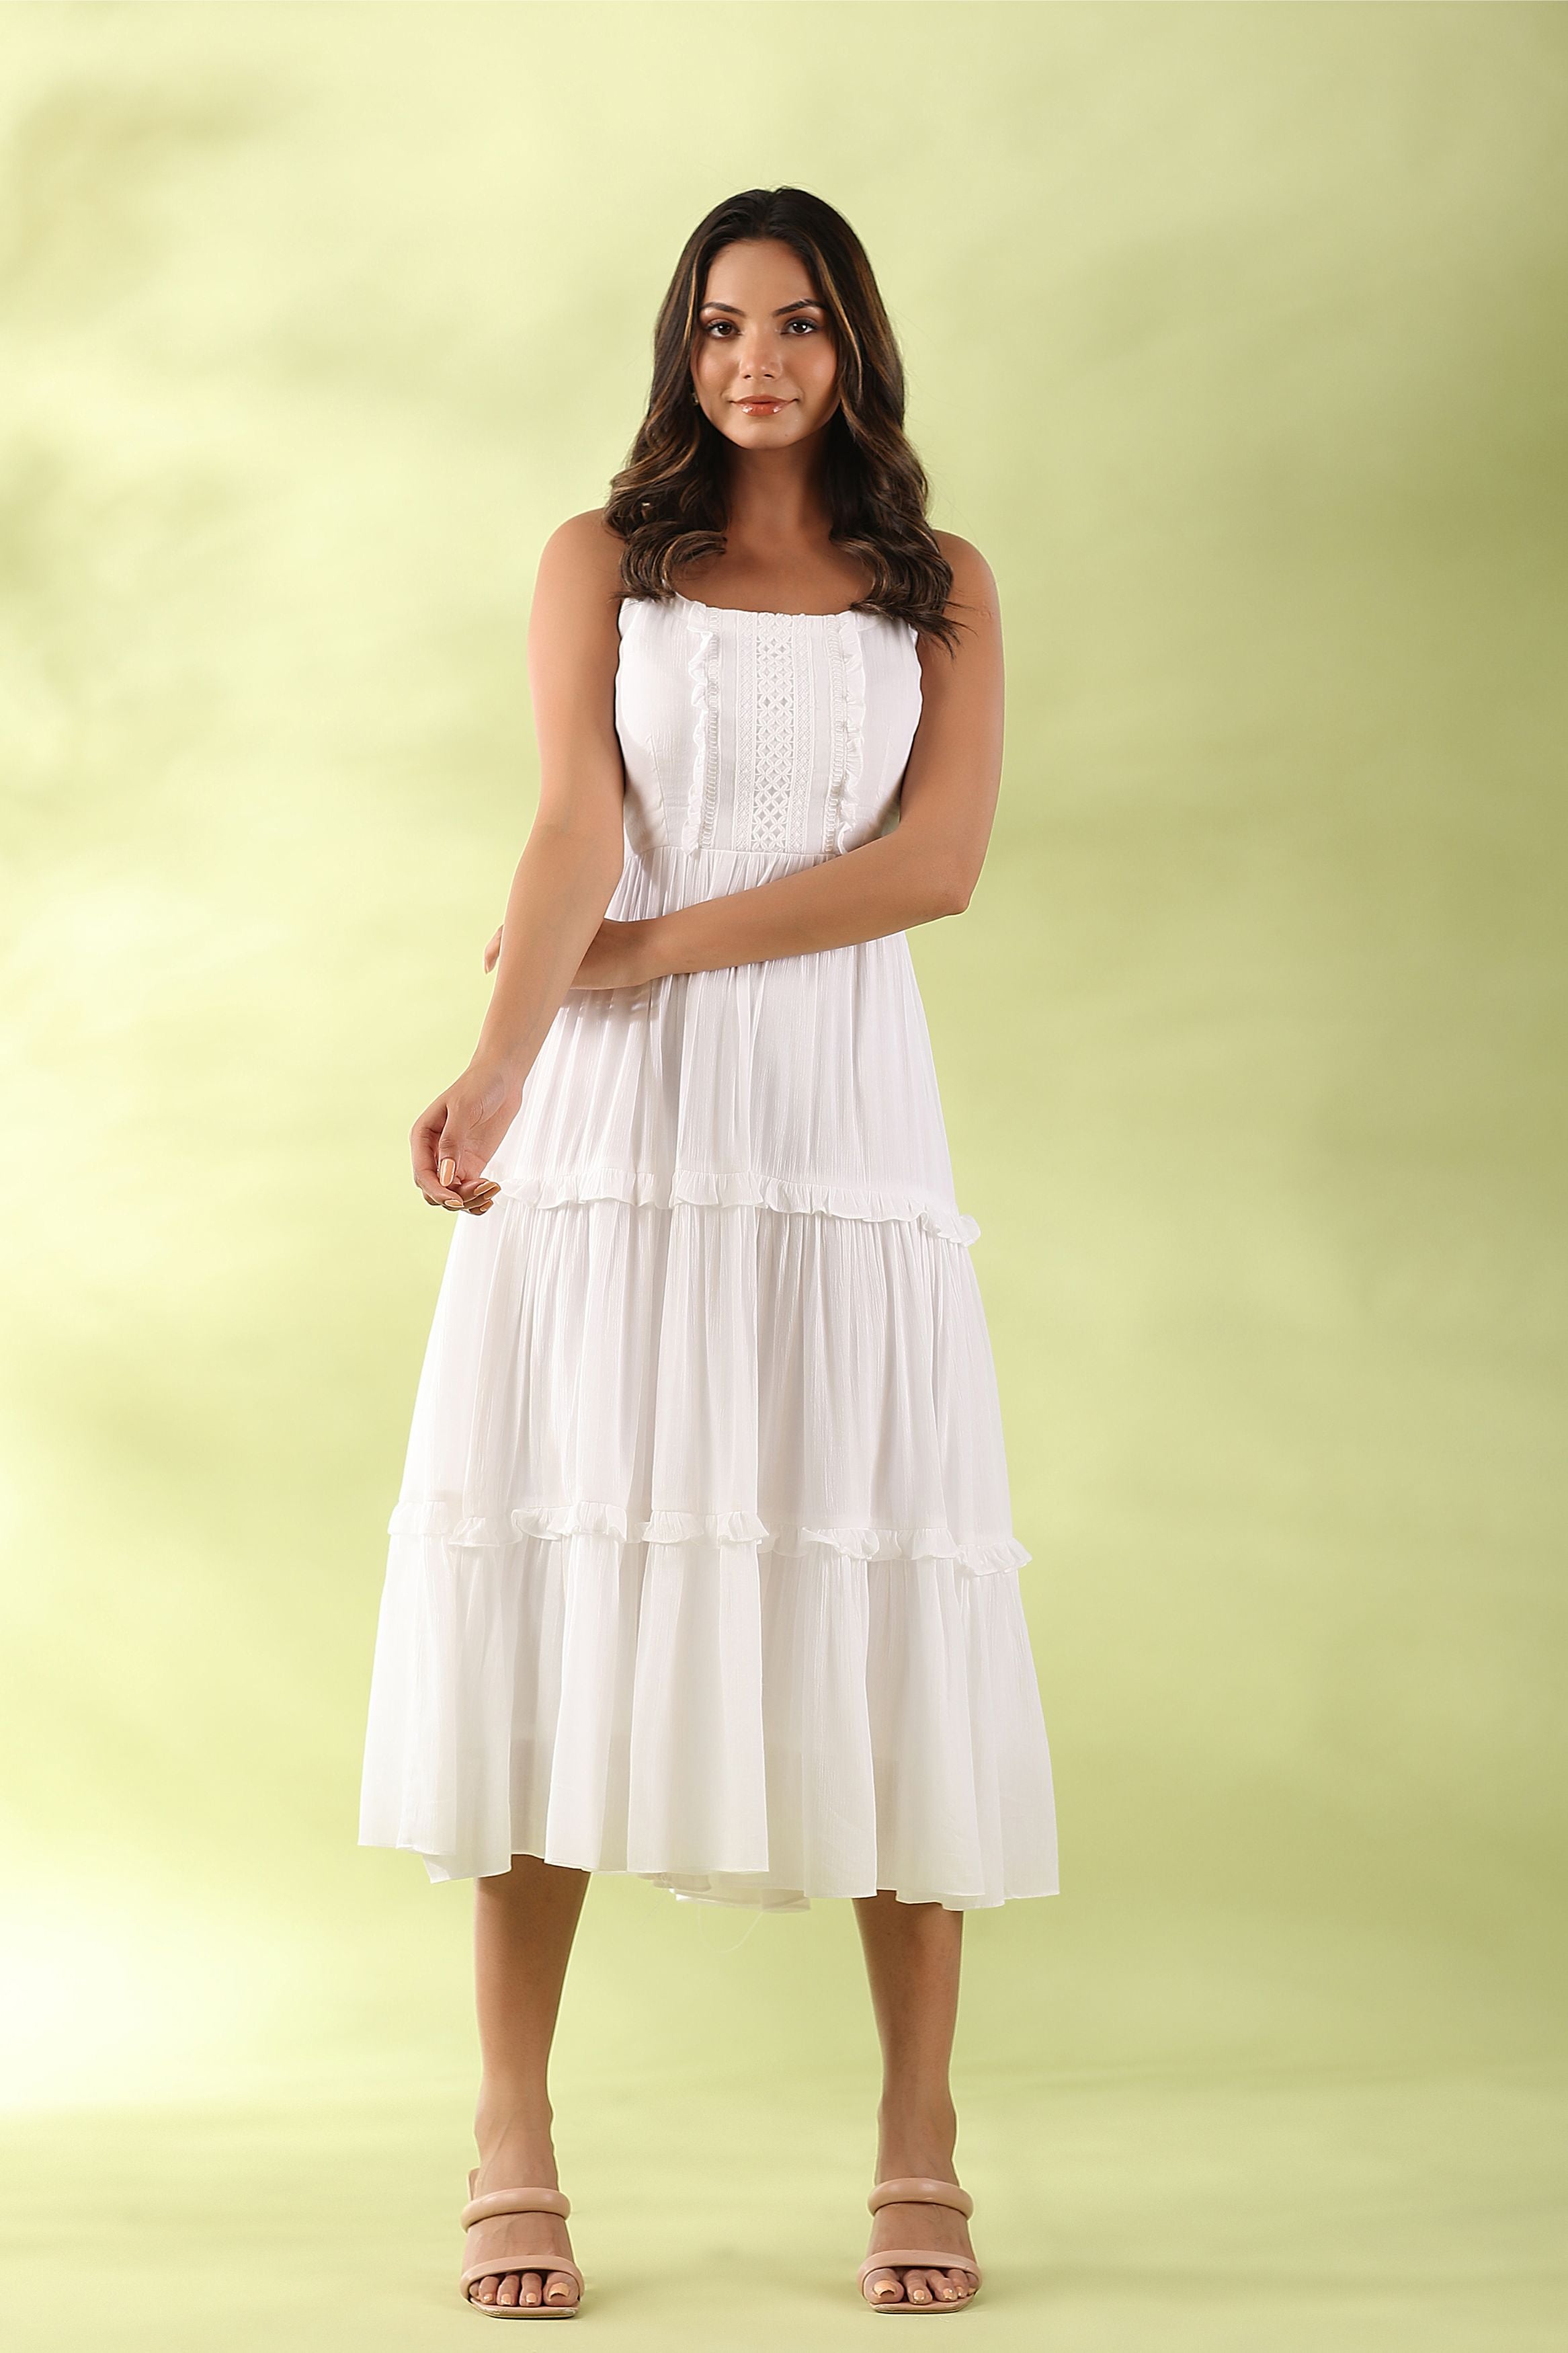 hakoba dress | Kurti designs latest, Dress, White dress